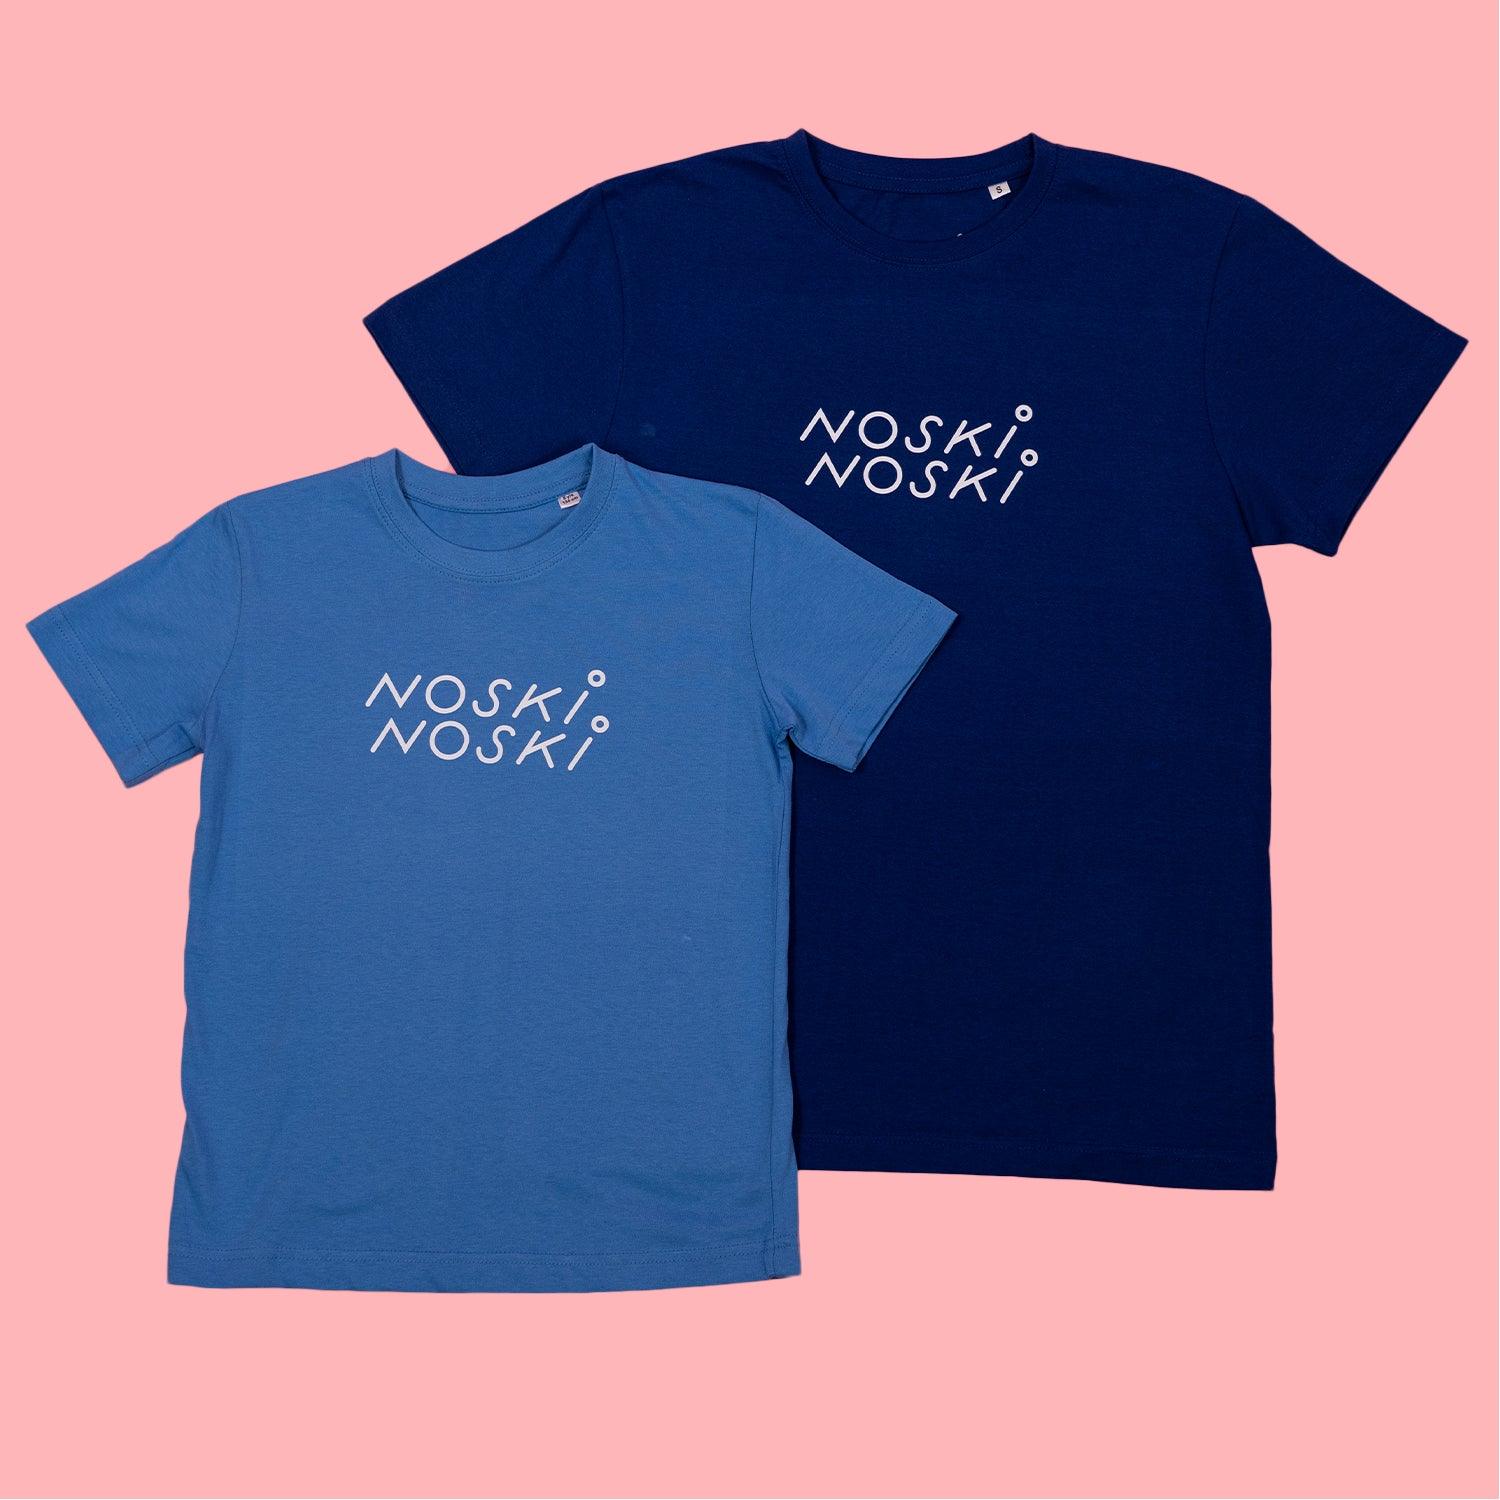 Noski Noski: NN skjorte